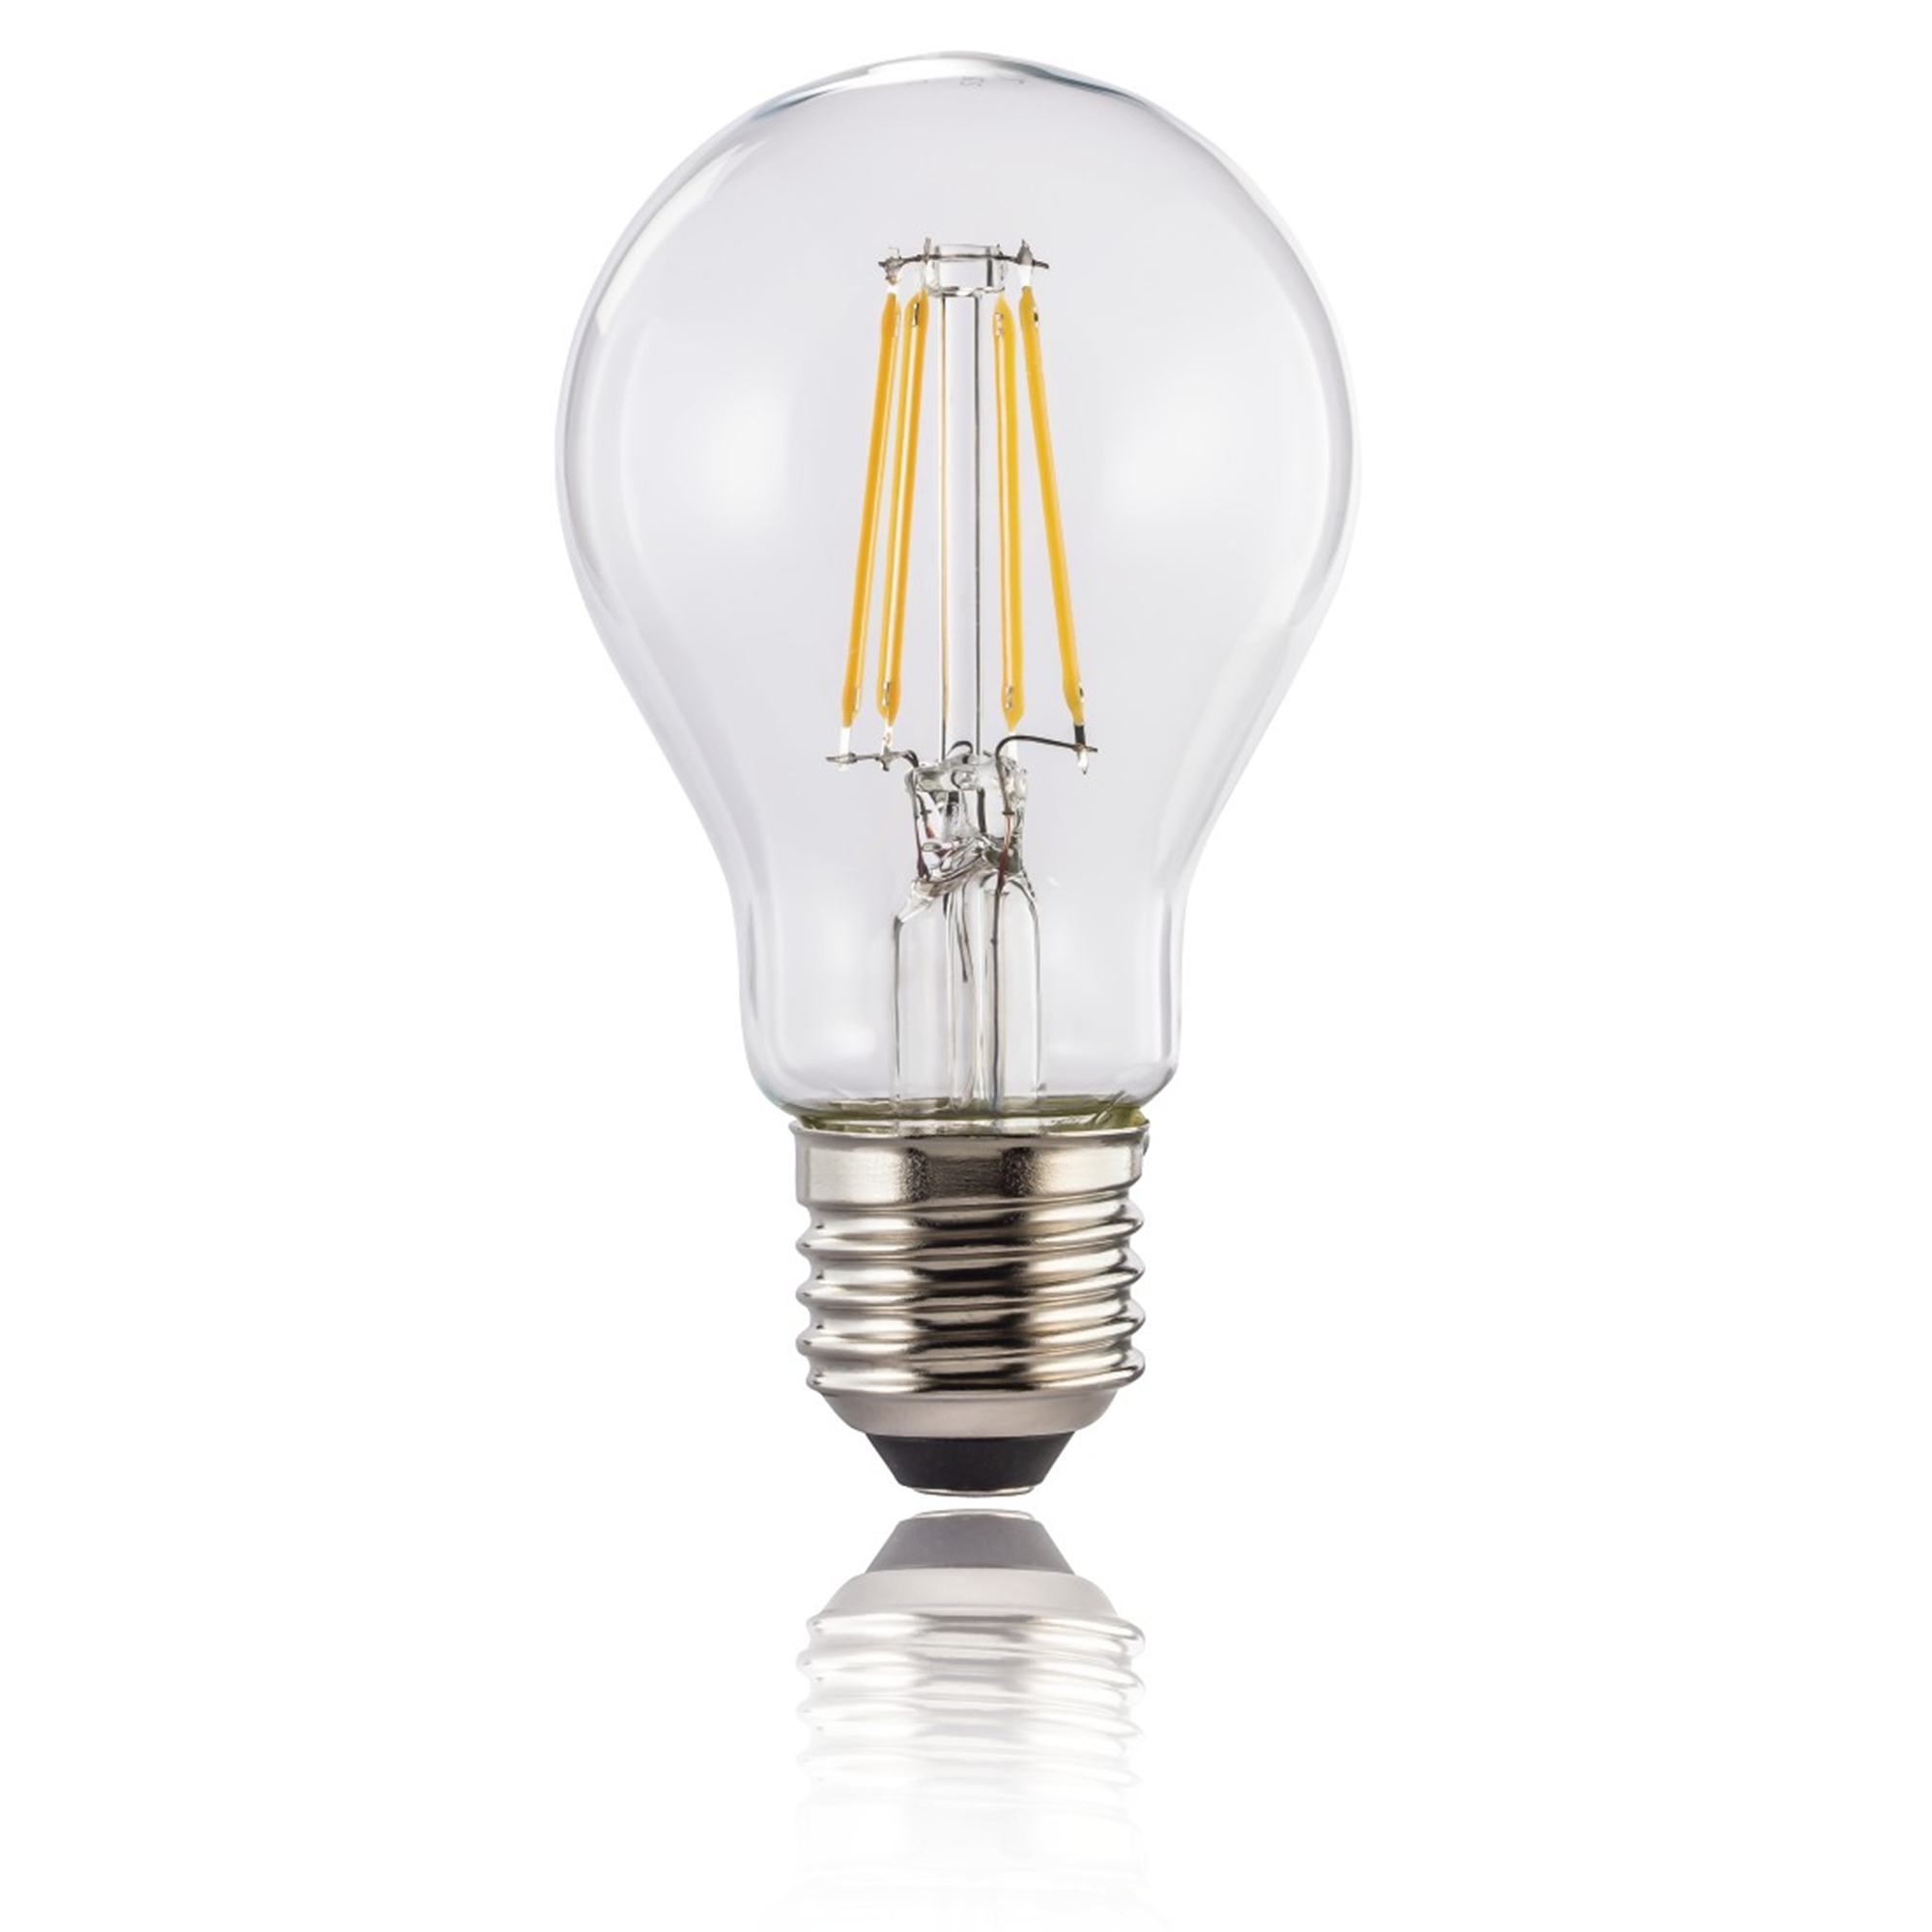 XAVAX E27, E27 Warmweiß LED-Lampe 470lm ersetzt 40W